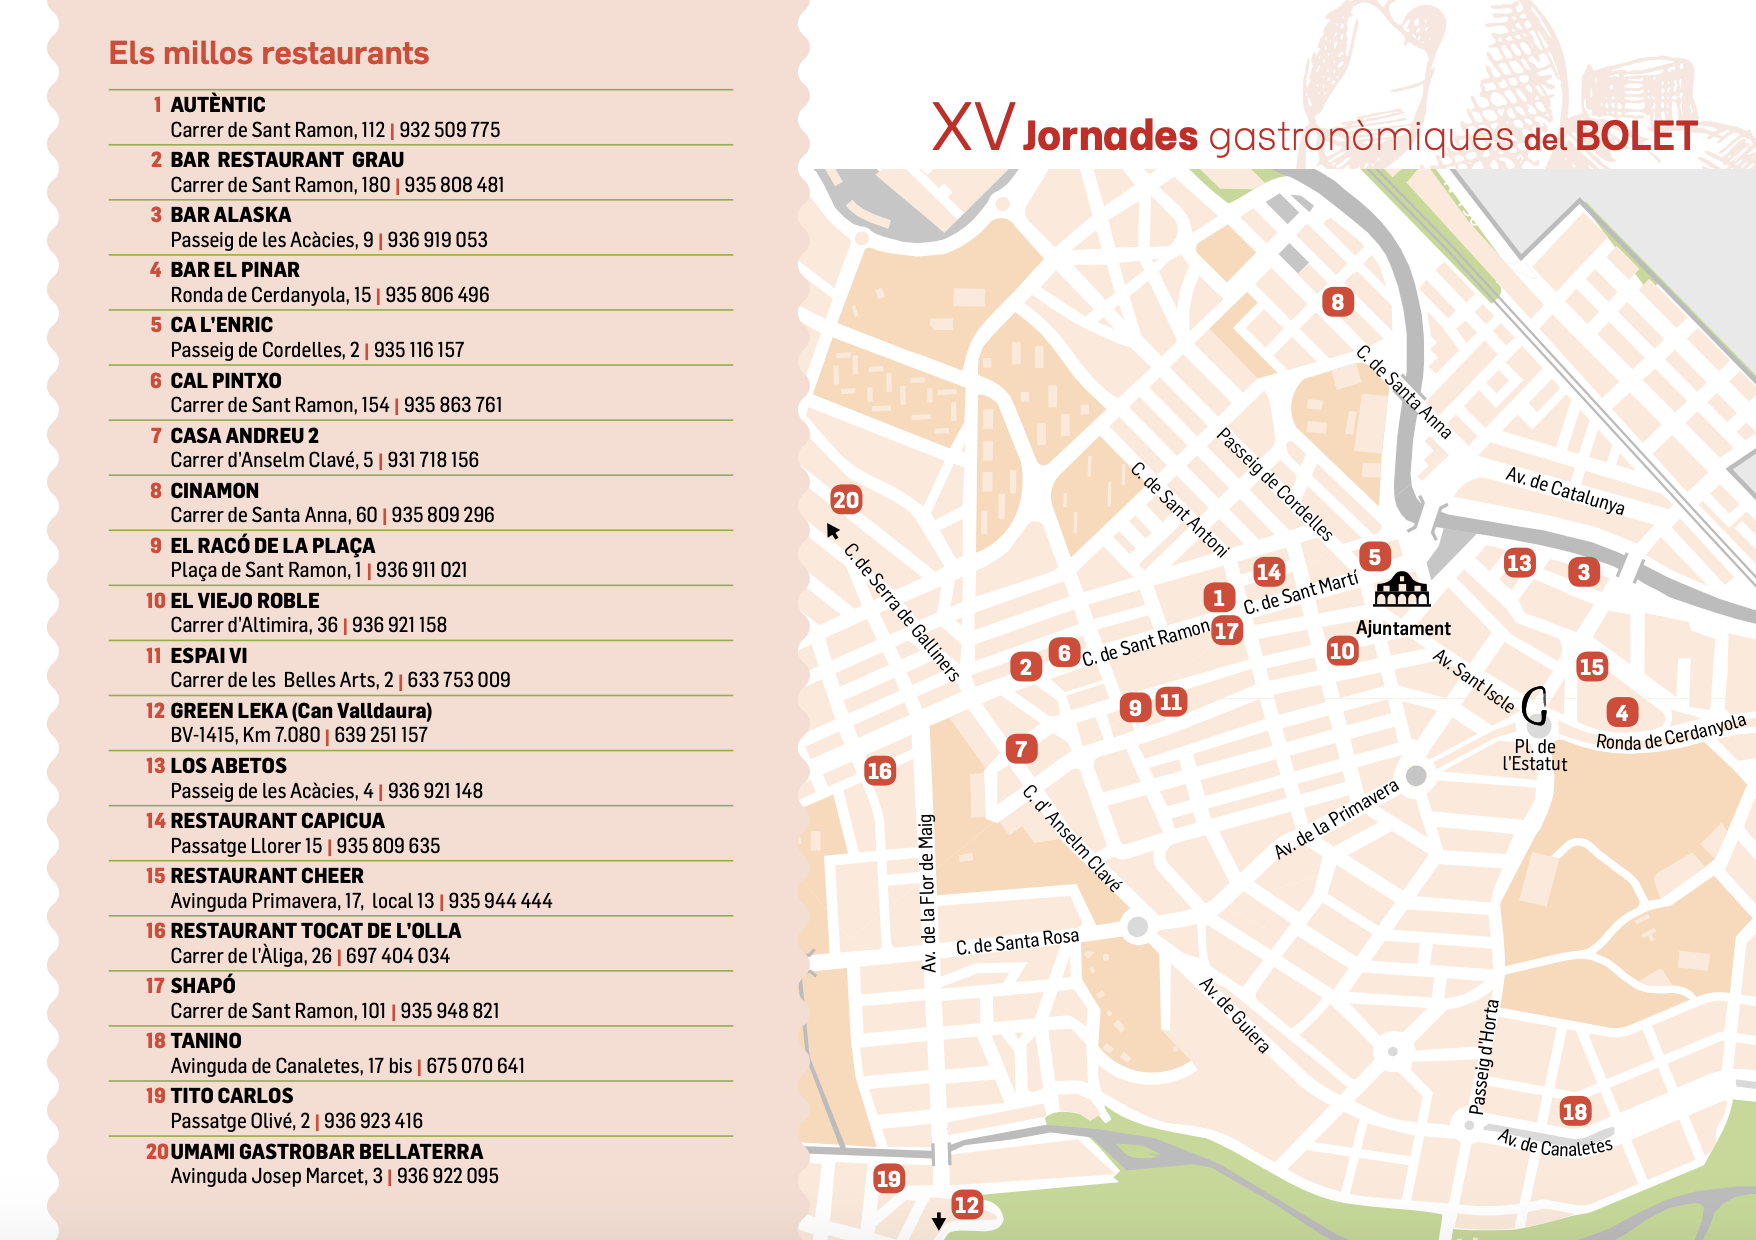 Mapa dels restaurants participants a les Jornades Gastronòmiques del Bolet d'aquest 2021.